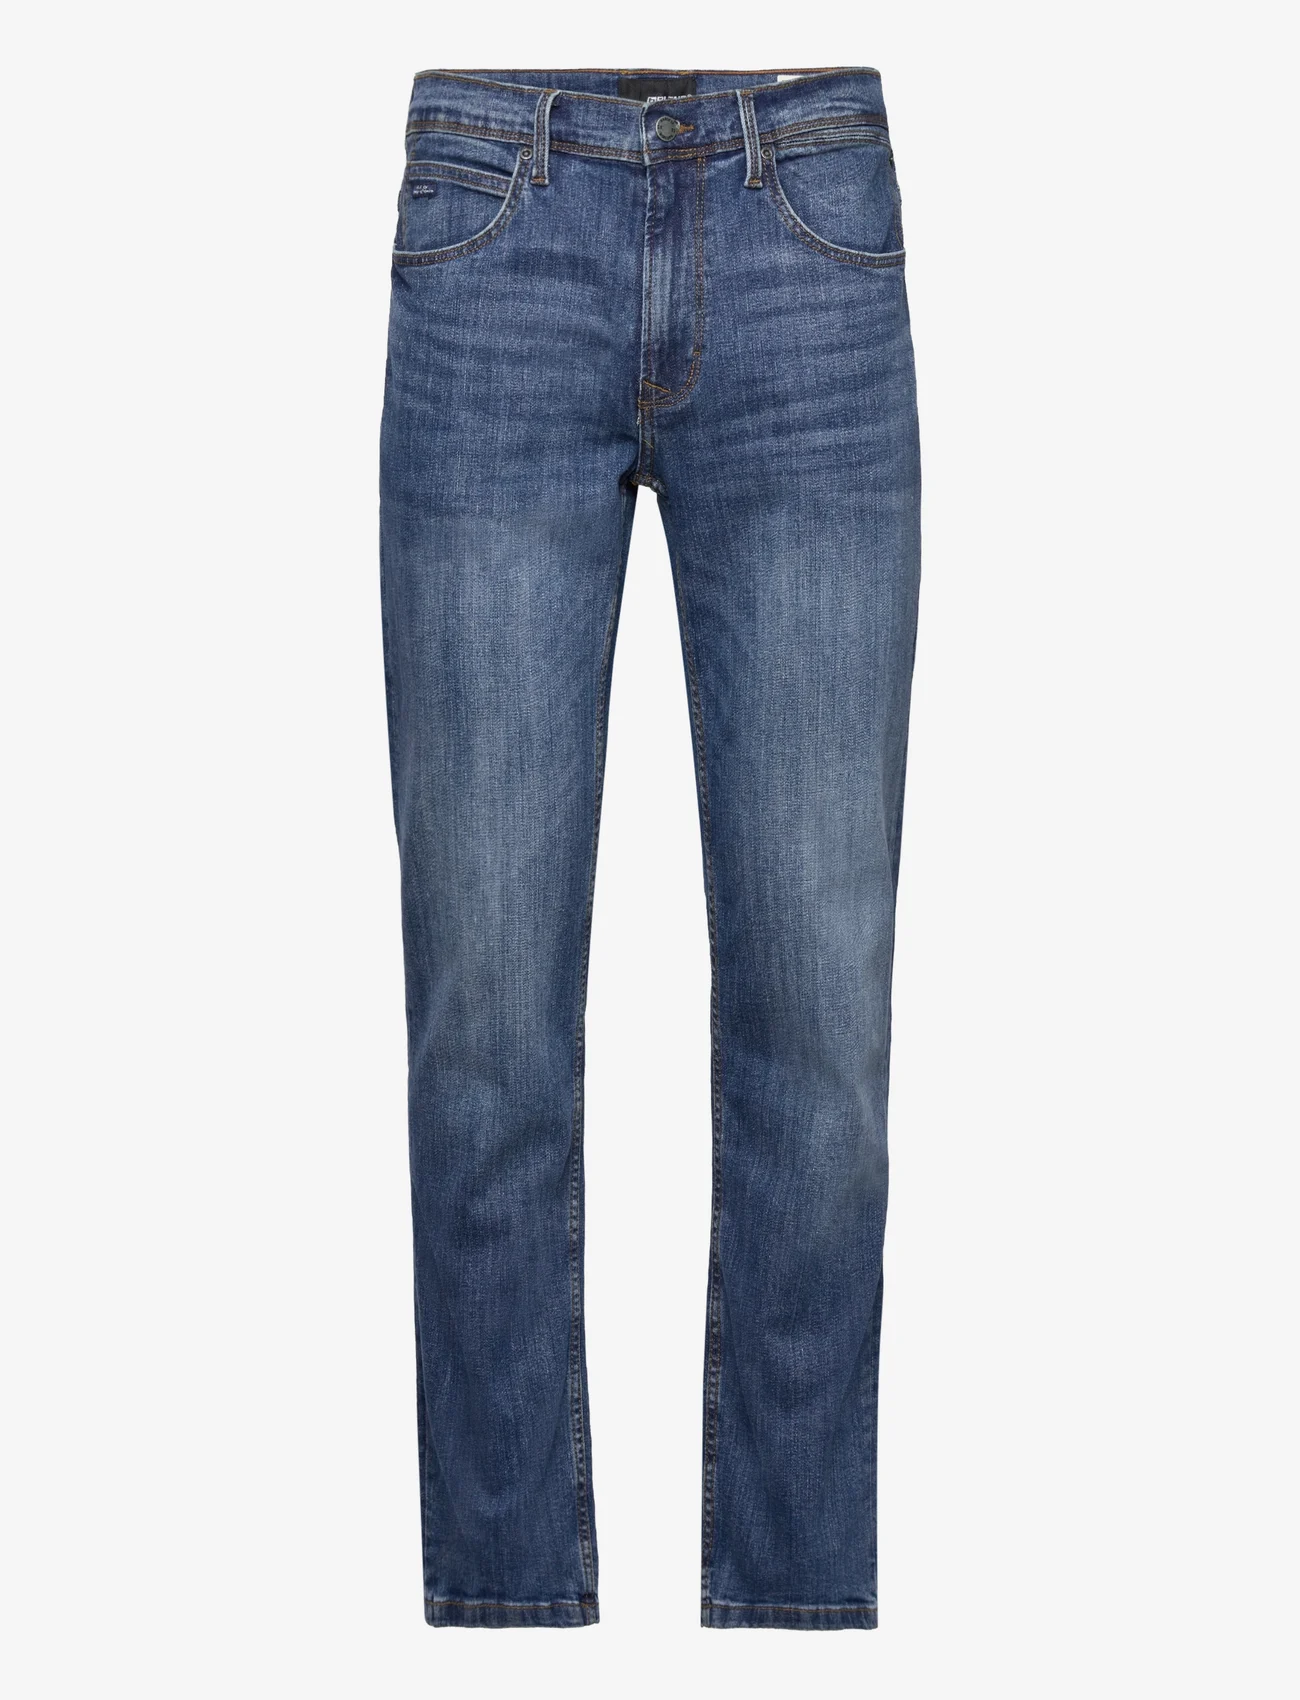 Blend - Rock fit - regular jeans - middle blue - 32 - 0